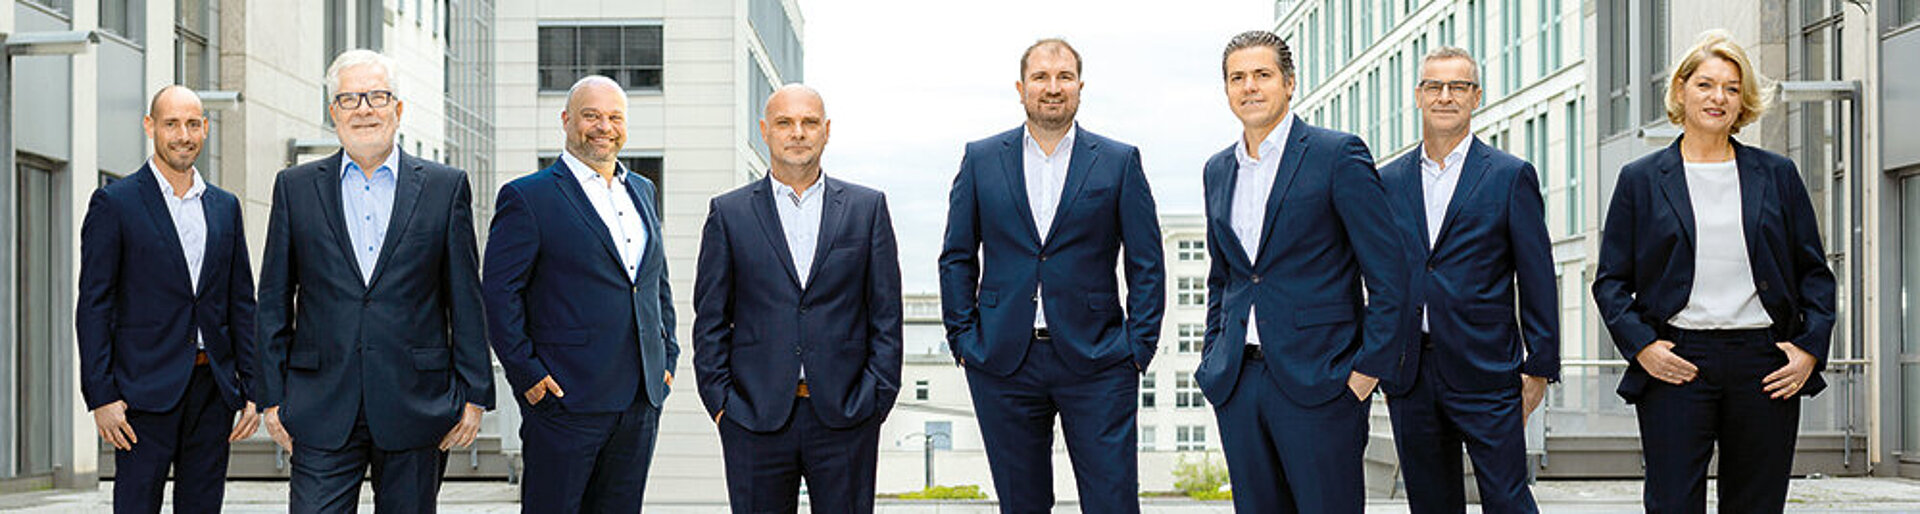 Photo of the Weidemann Group management team